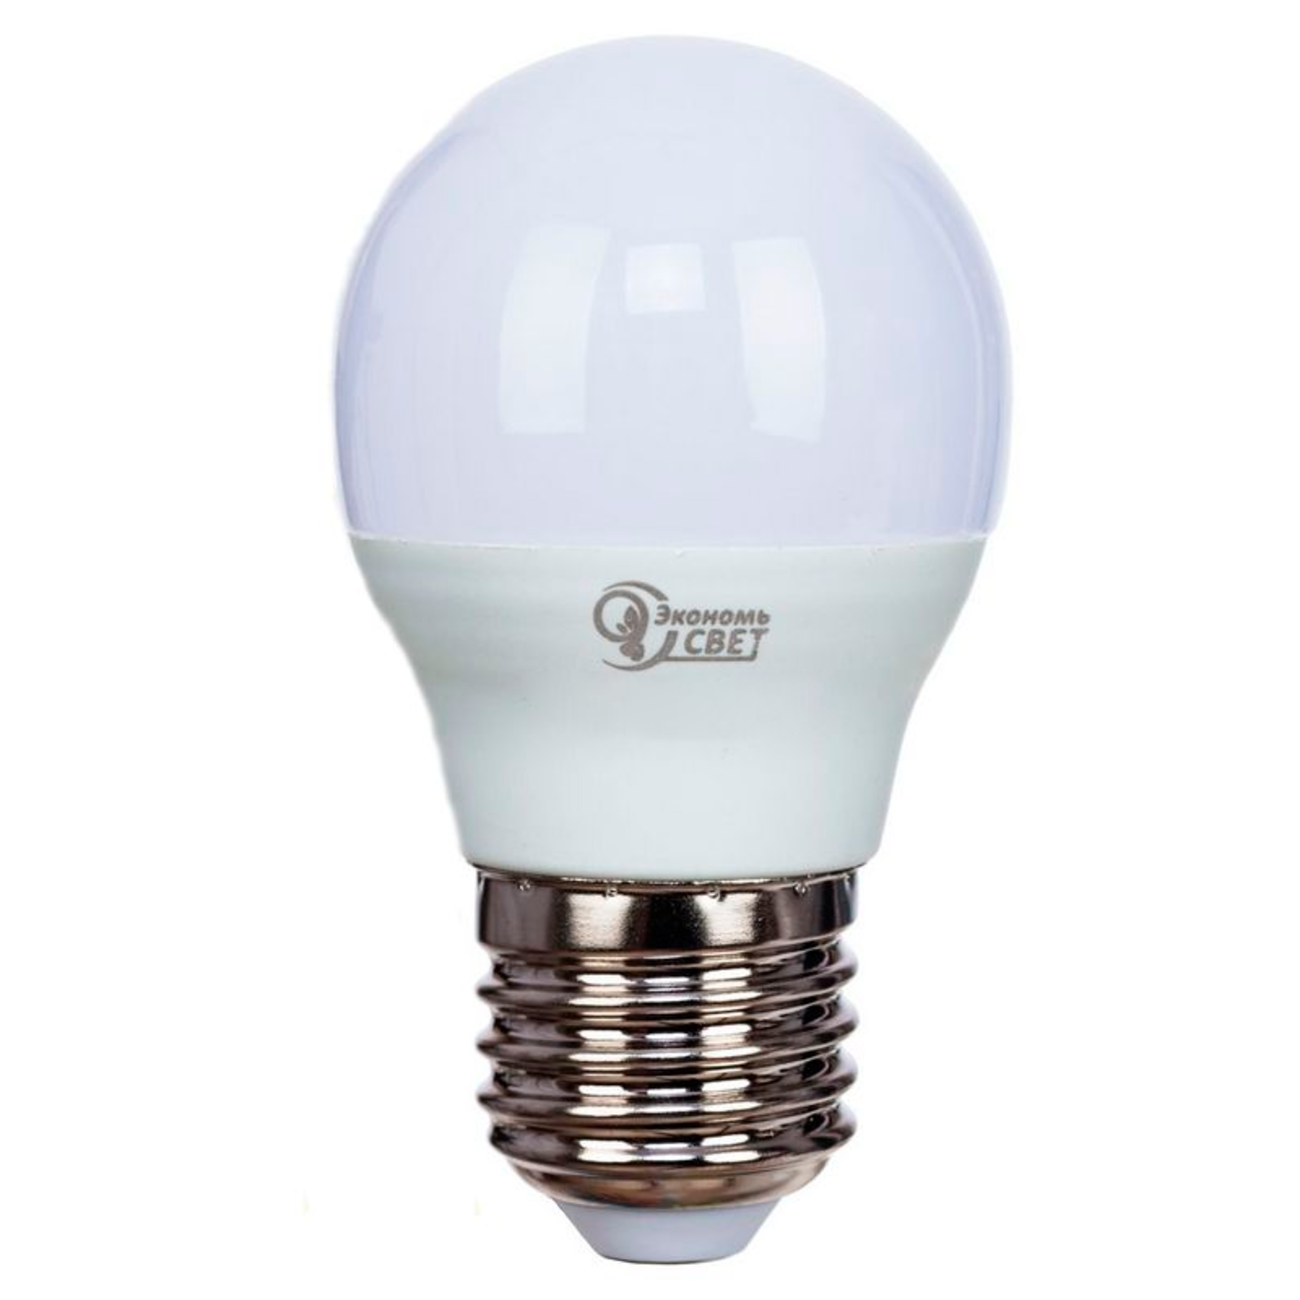 Лампа светодиодная Экономь свет Шар G45, цоколь Е14, 7 Вт, теплый свет 3000К							